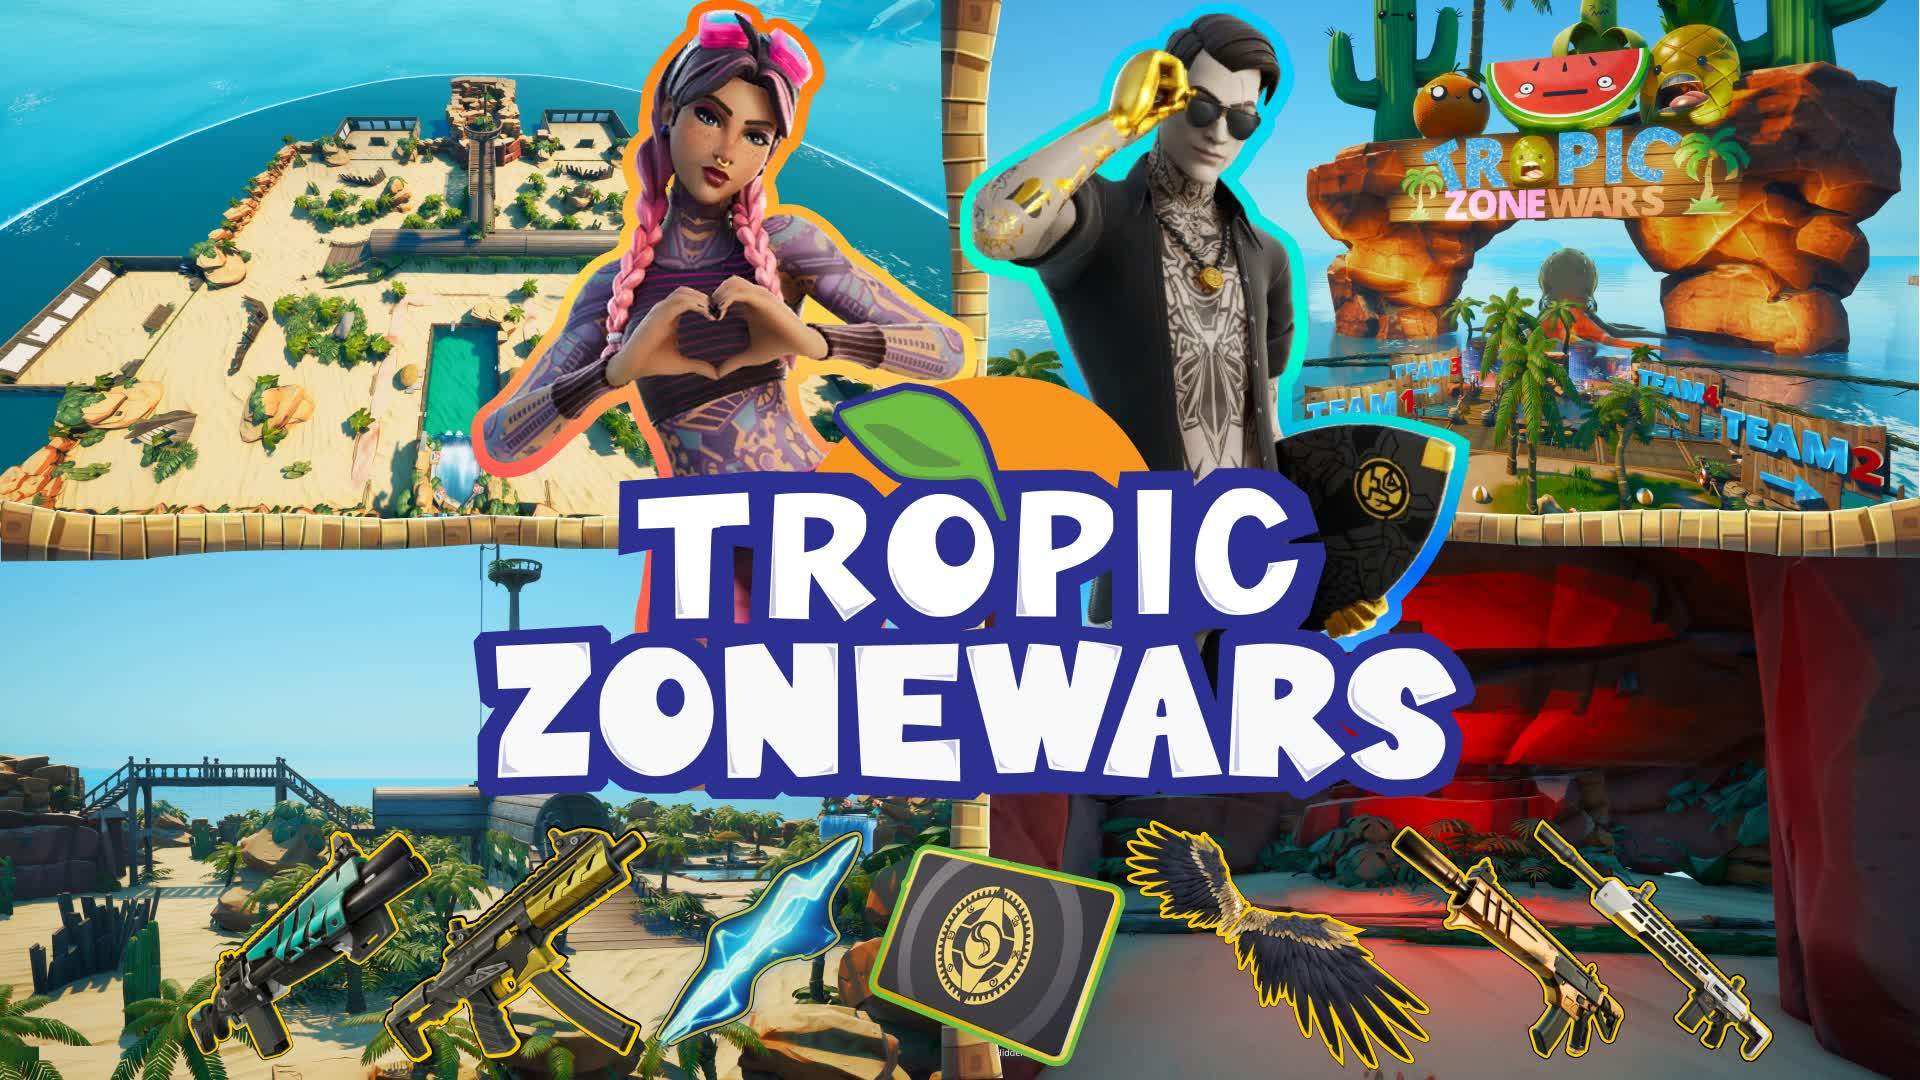 Tropic Zonewars